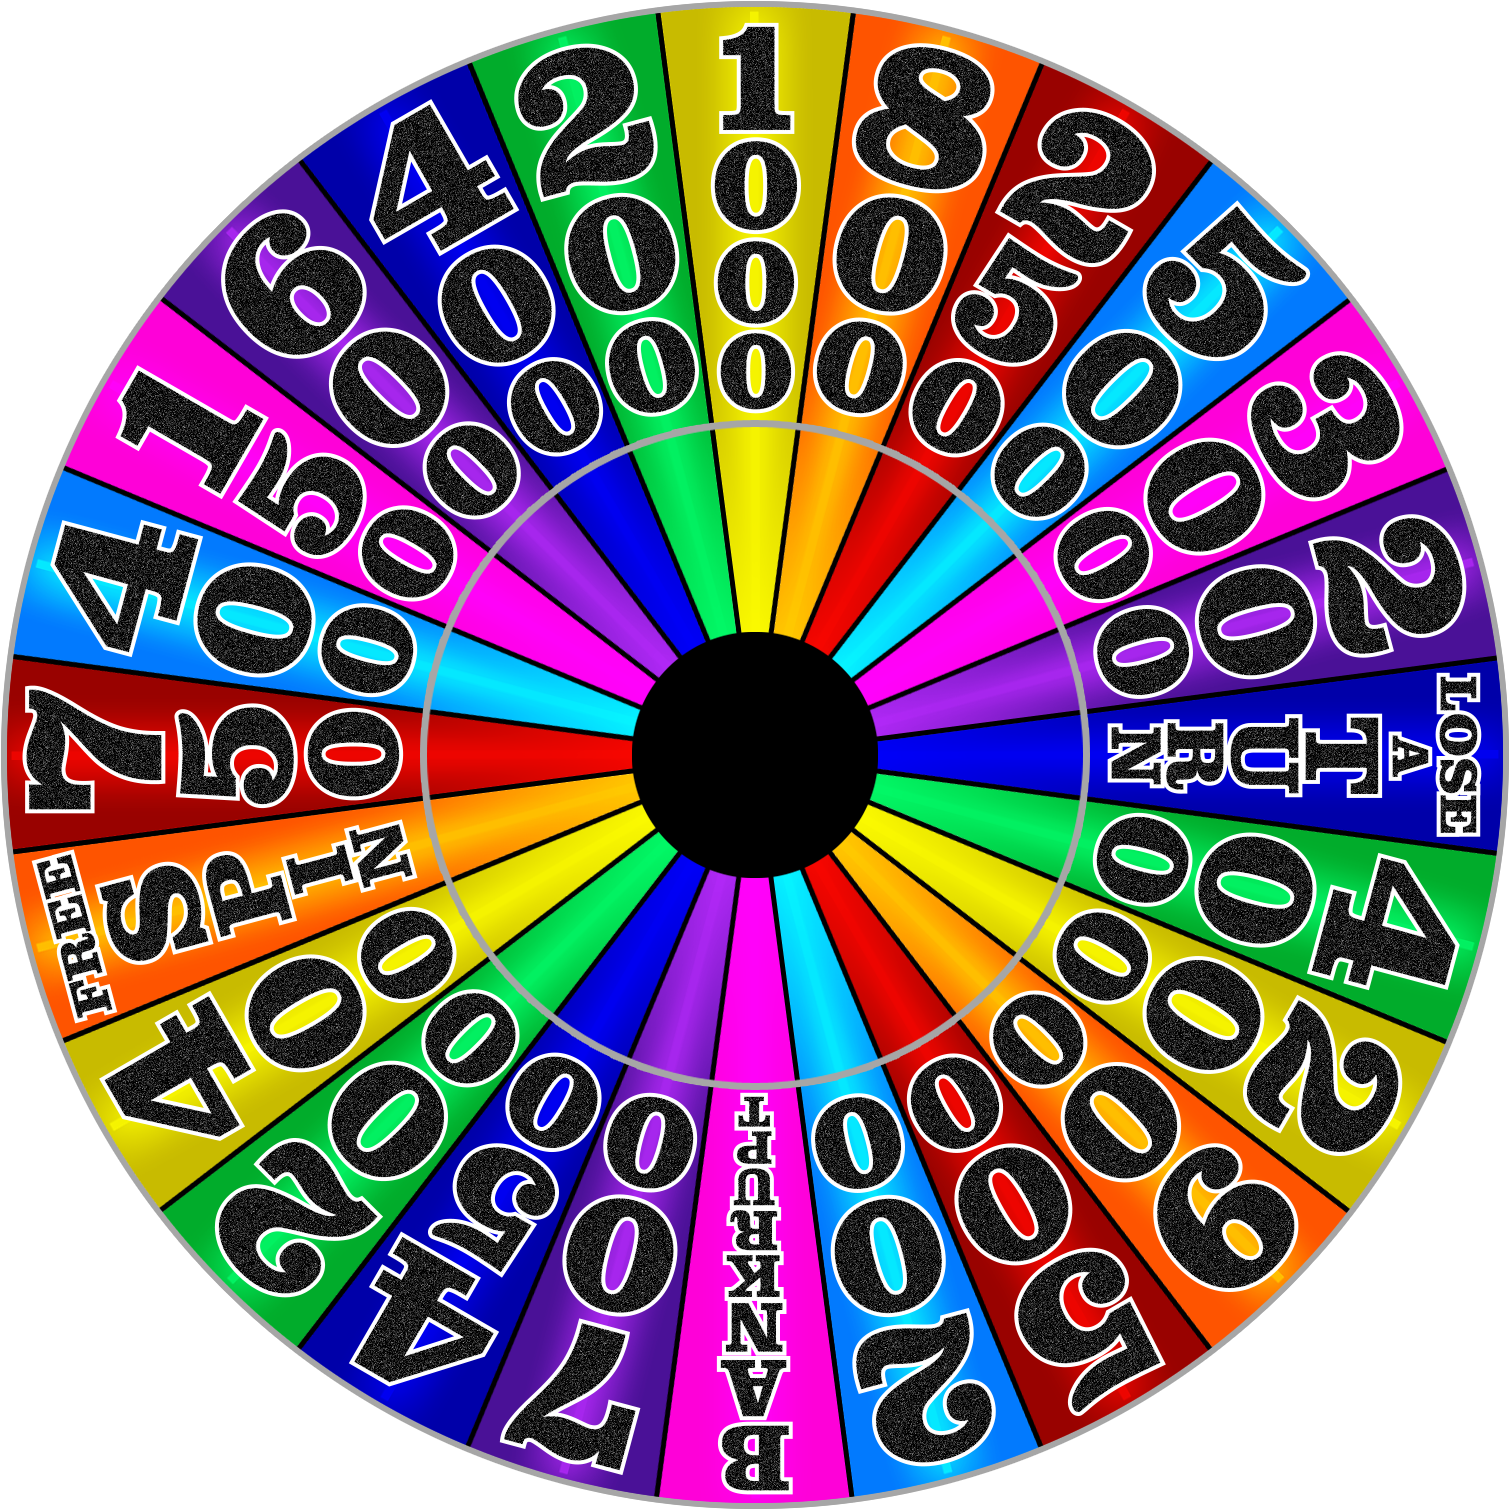 UK Wheel of Fortune - 1998 - Round 1 by wheelgenius